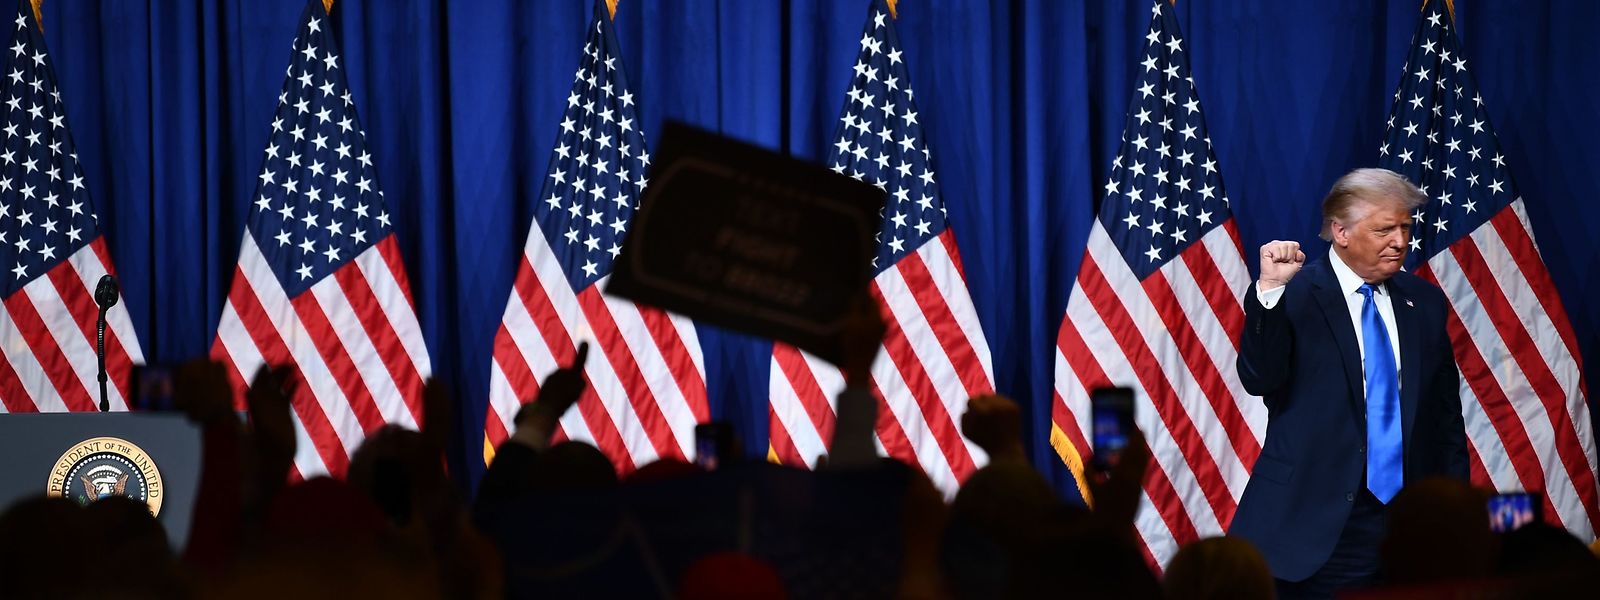 US-Präsident Donald Trump während der Convention der Reublikaner, die ihn erneut zum Präsidentschaftsanwärter gewählt haben.